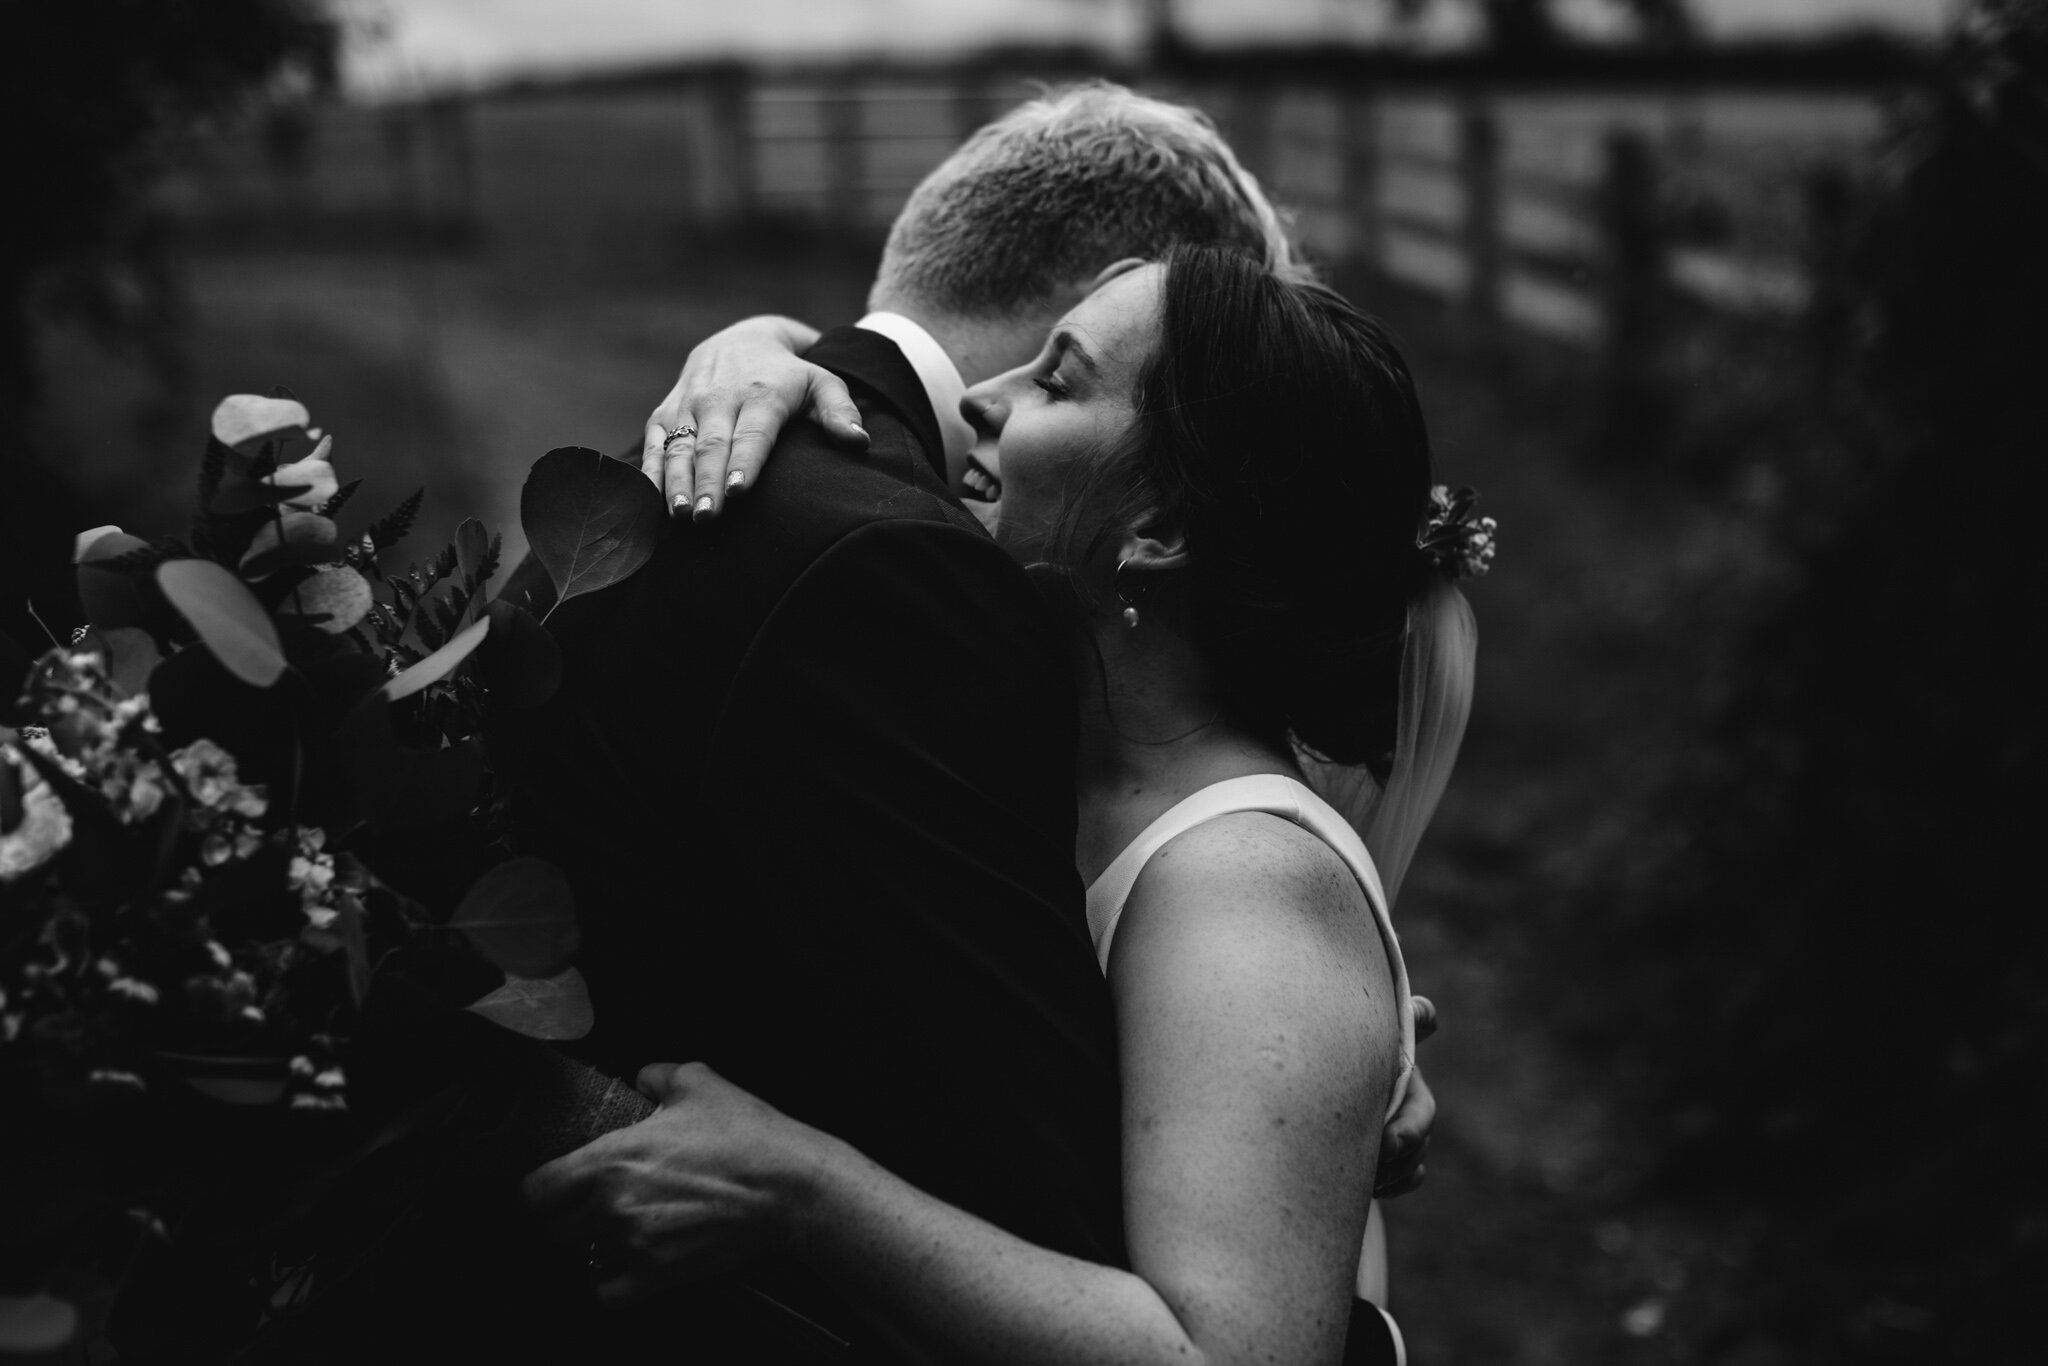 derbyshire-wedding-elopement-photographer-best-2020-63.jpg